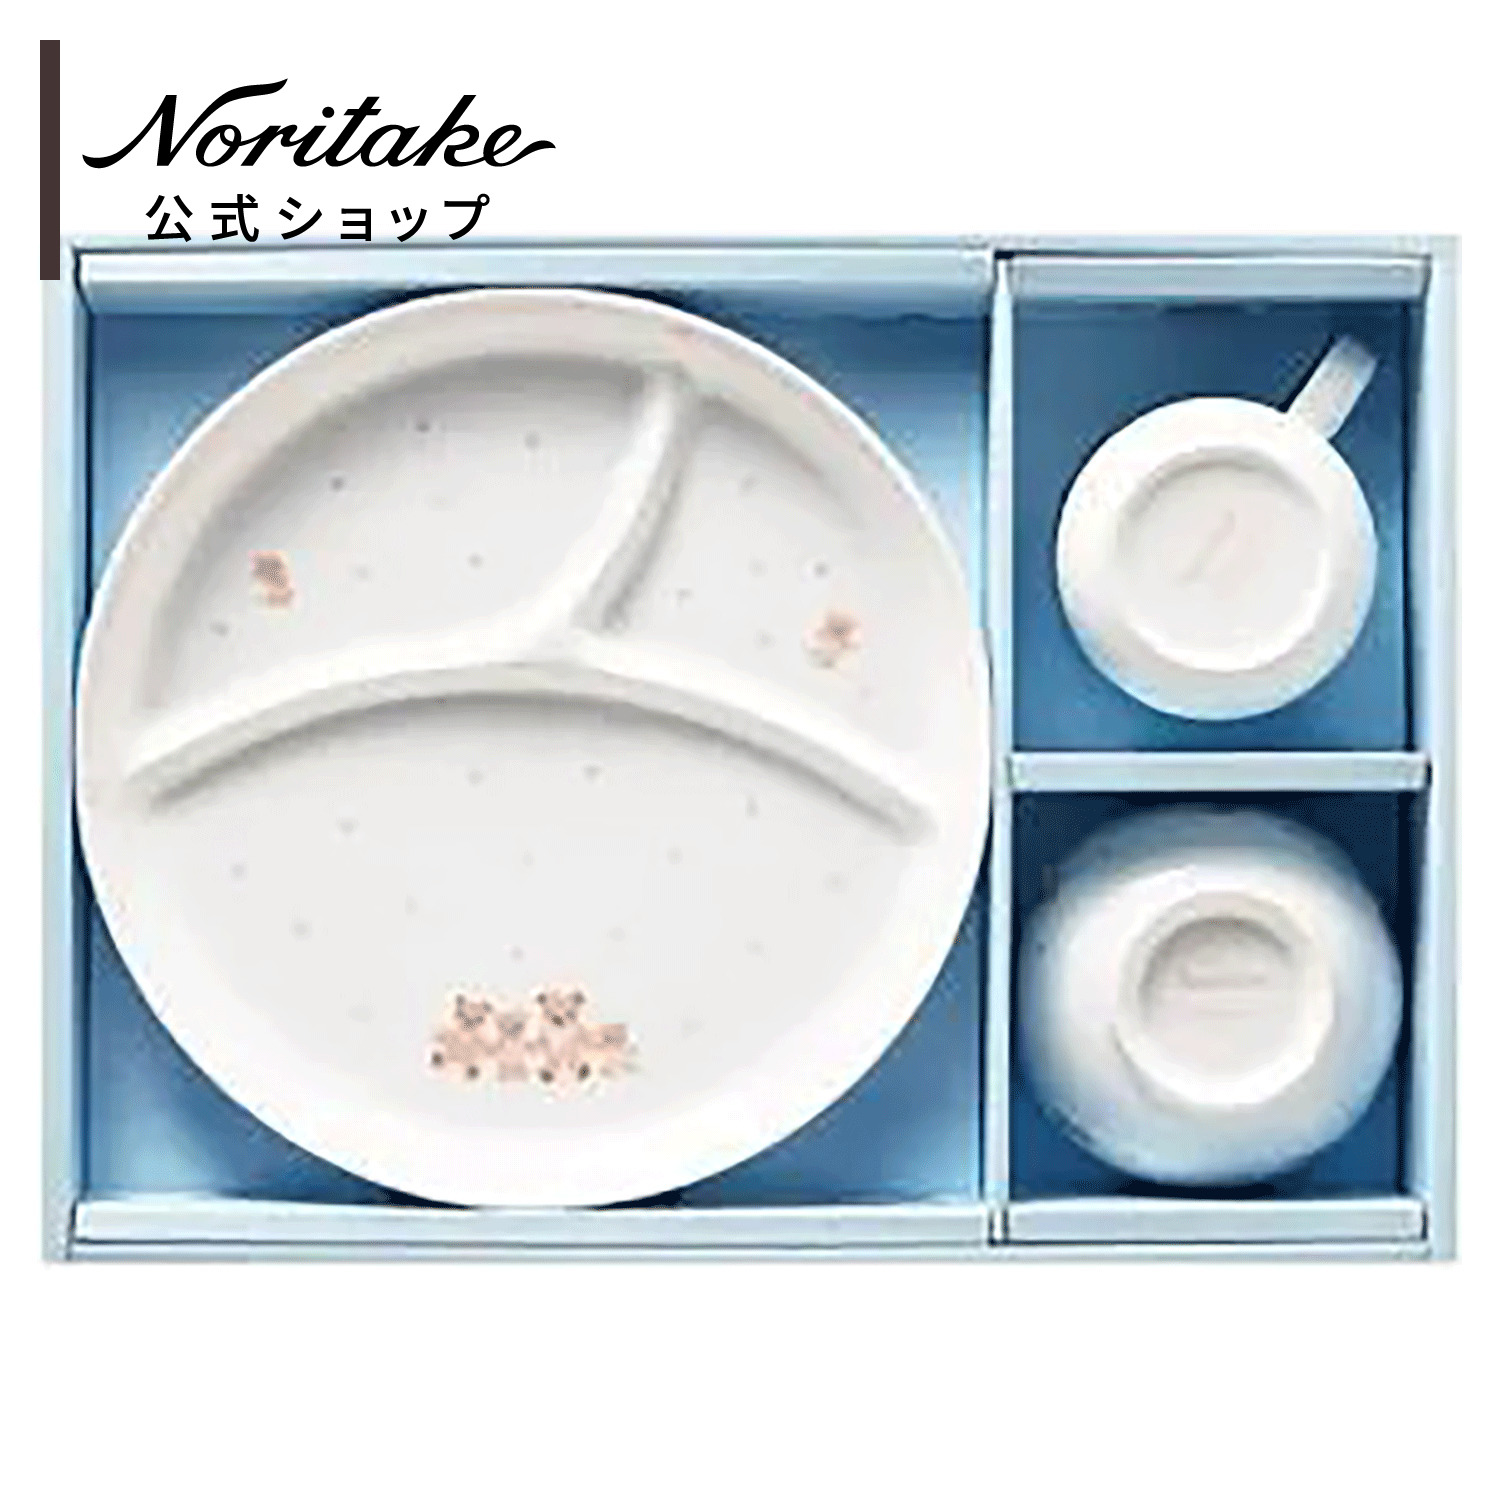 【楽天市場】ファミリア × ノリタケ 子供食器NR/食器セット(ブルー 